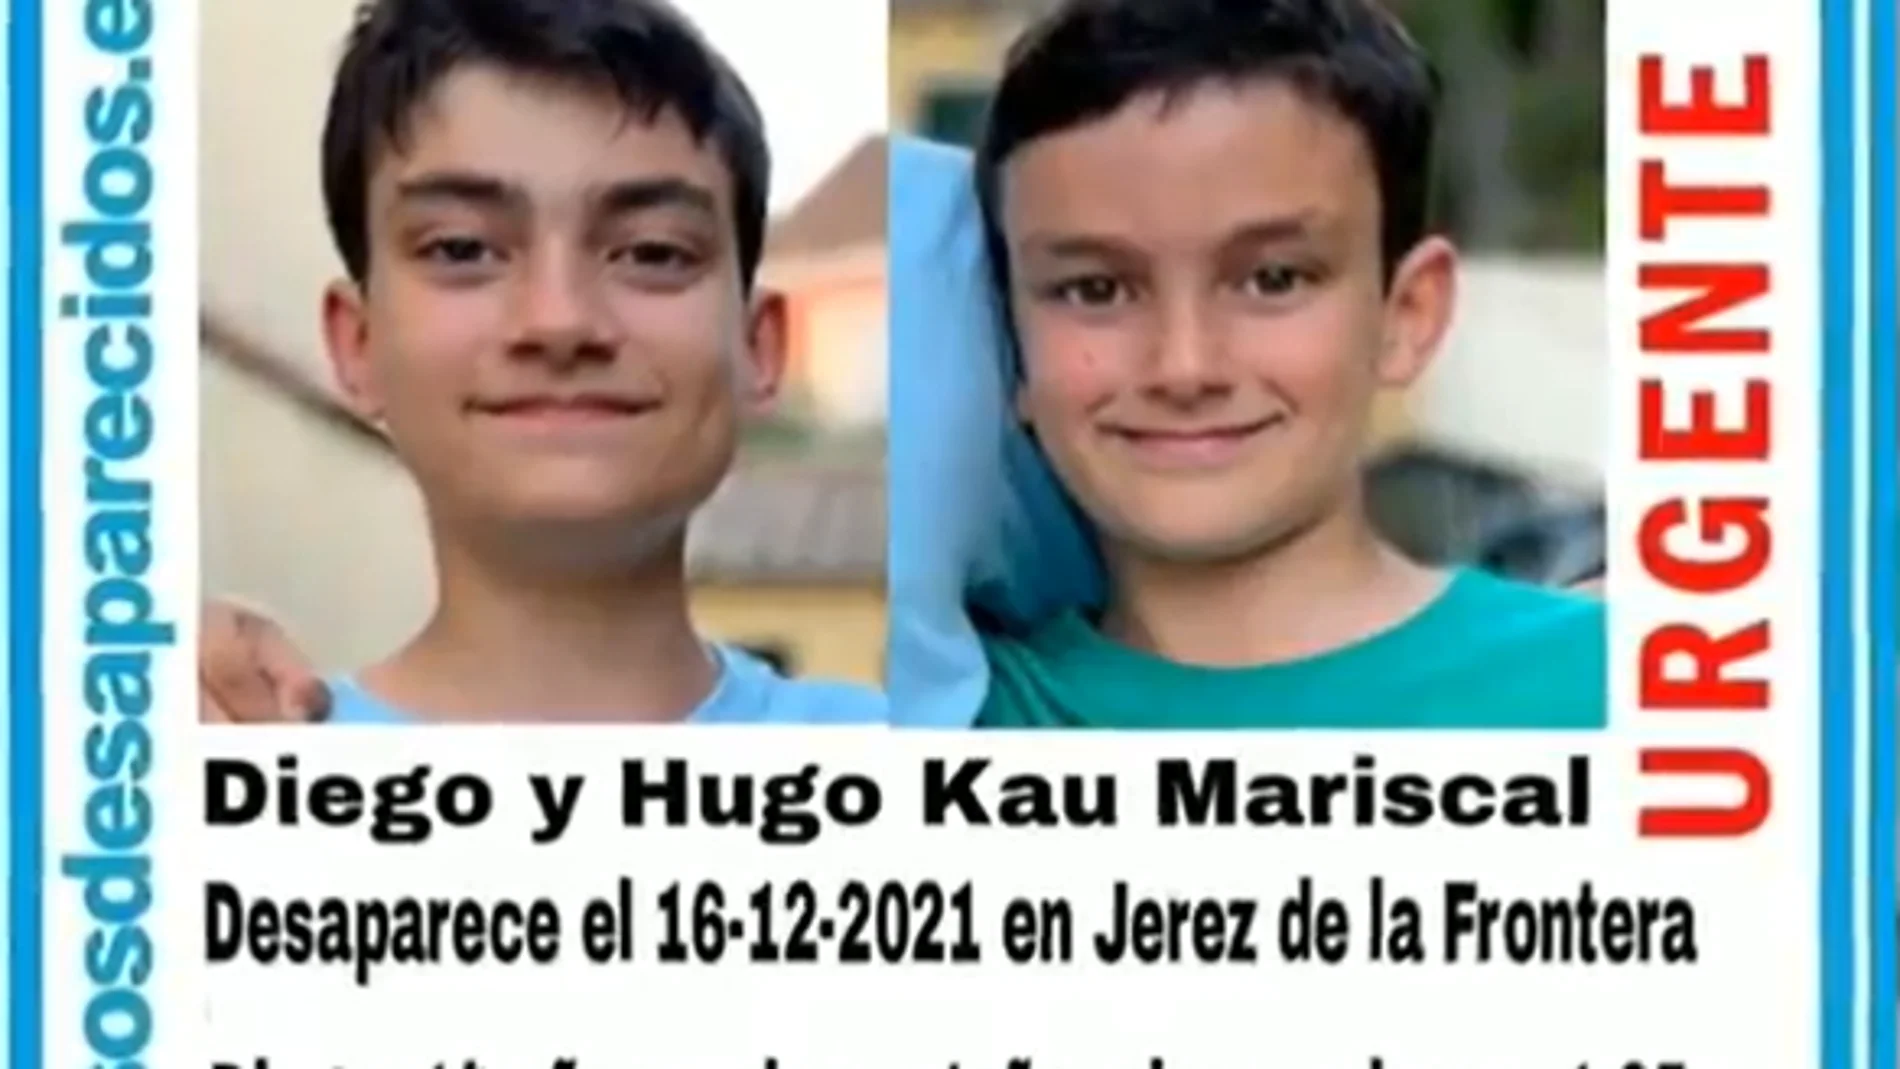 Diego y Hugo, niños desaparecidos